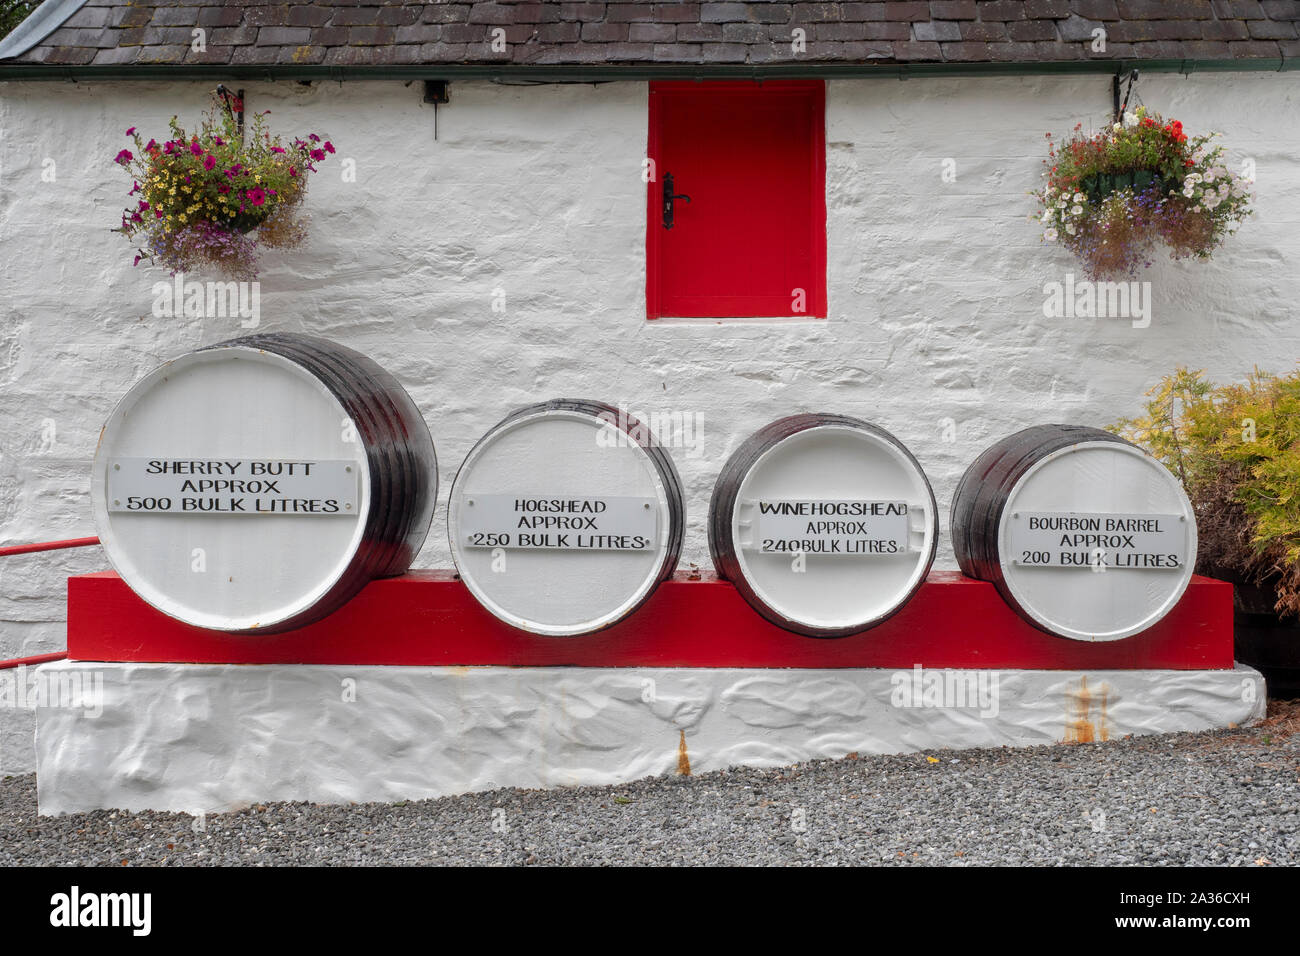 Diferentes tamaños de barriles utilizados para almacenar en una destilería de whisky en Escocia Foto de stock